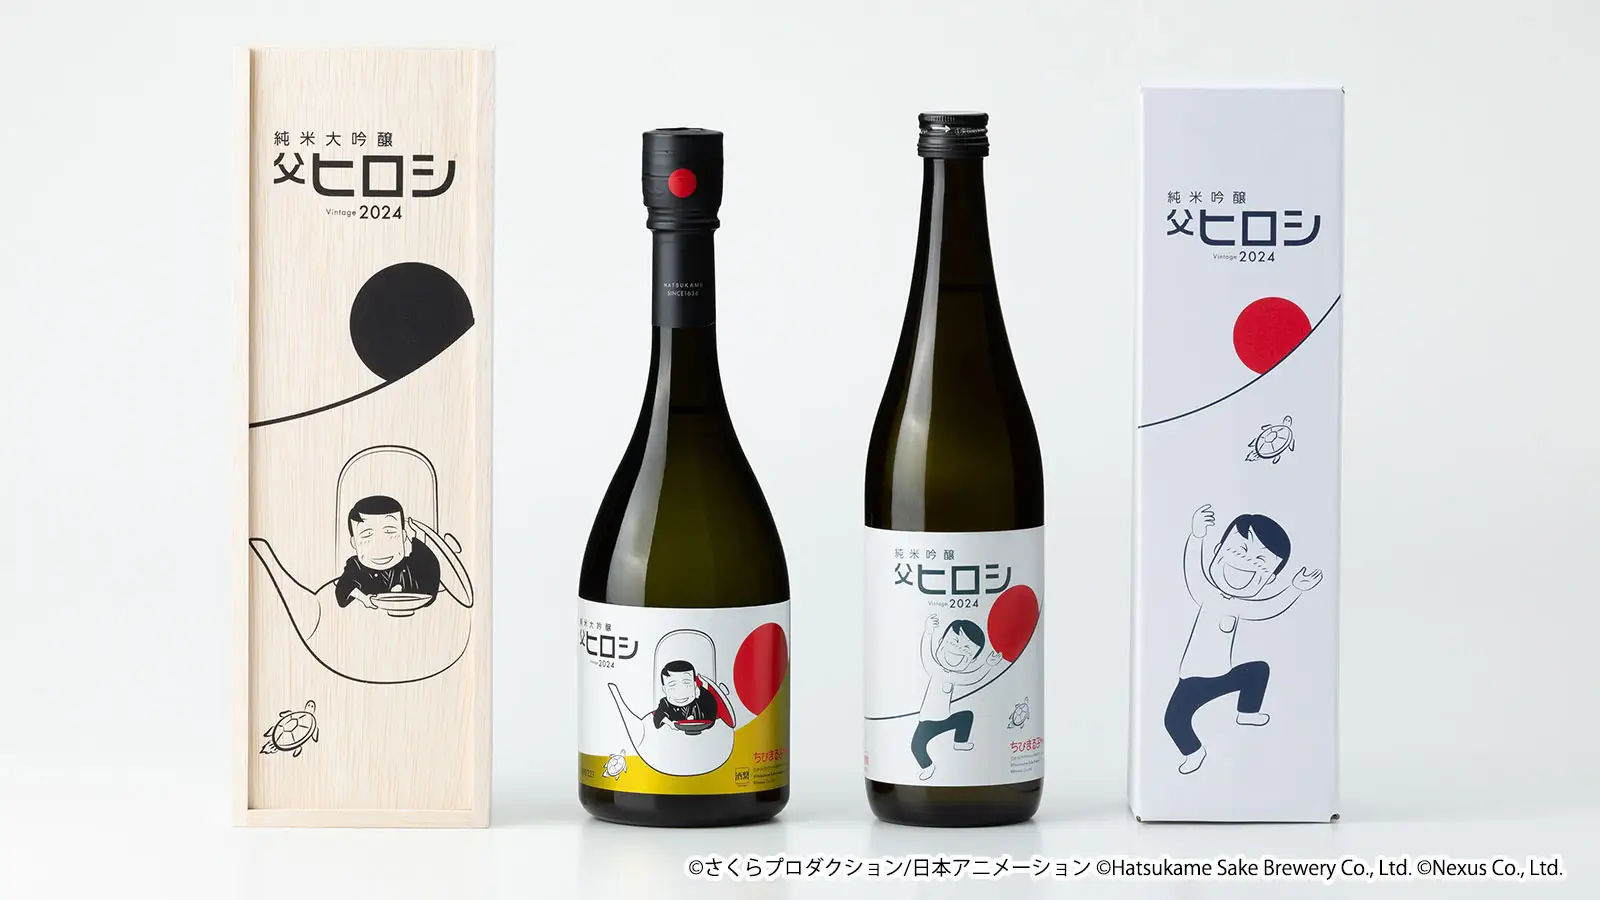 ちびまる子ちゃん コラボ日本酒「父ヒロシ」が今年も発売決定